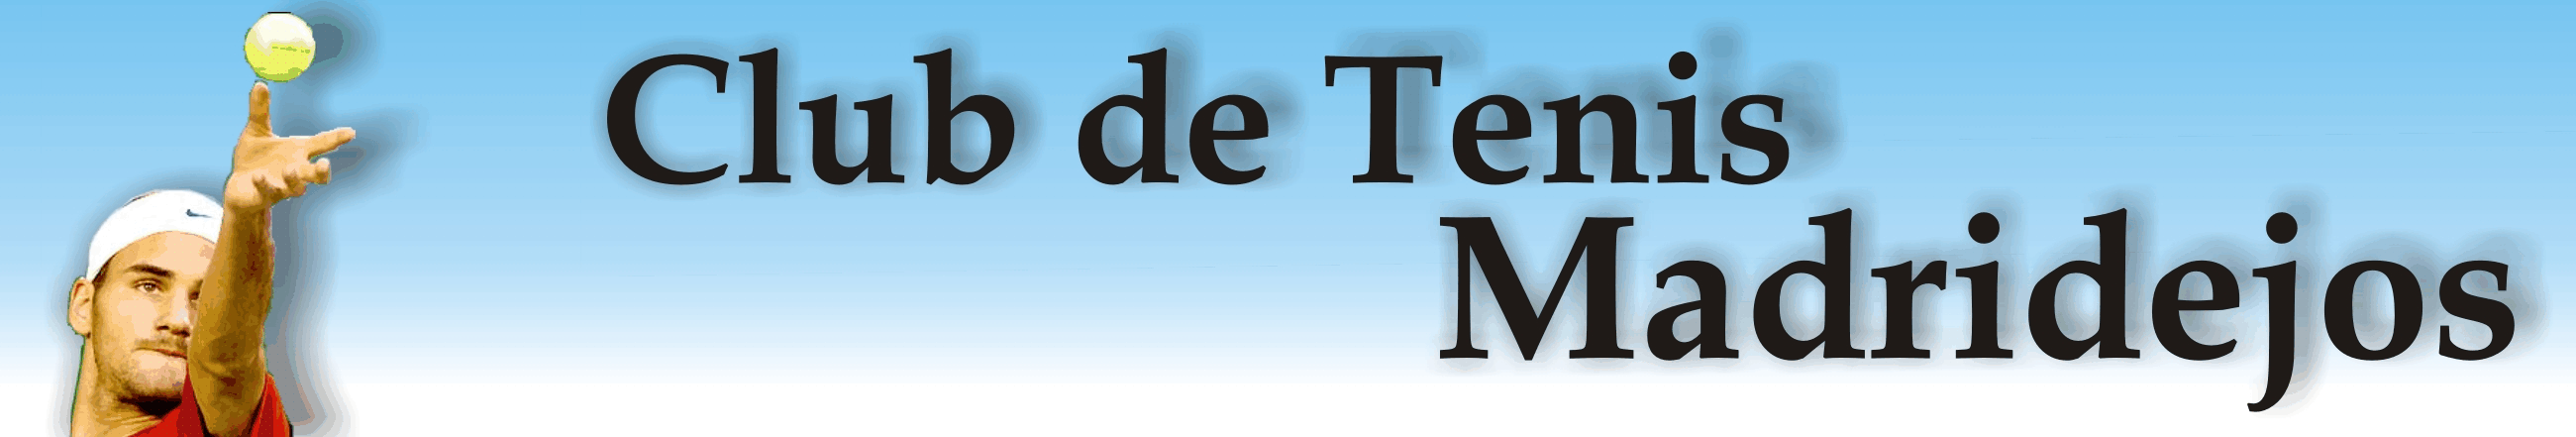 WEB CLUB DE TENIS MADRIDEJOS